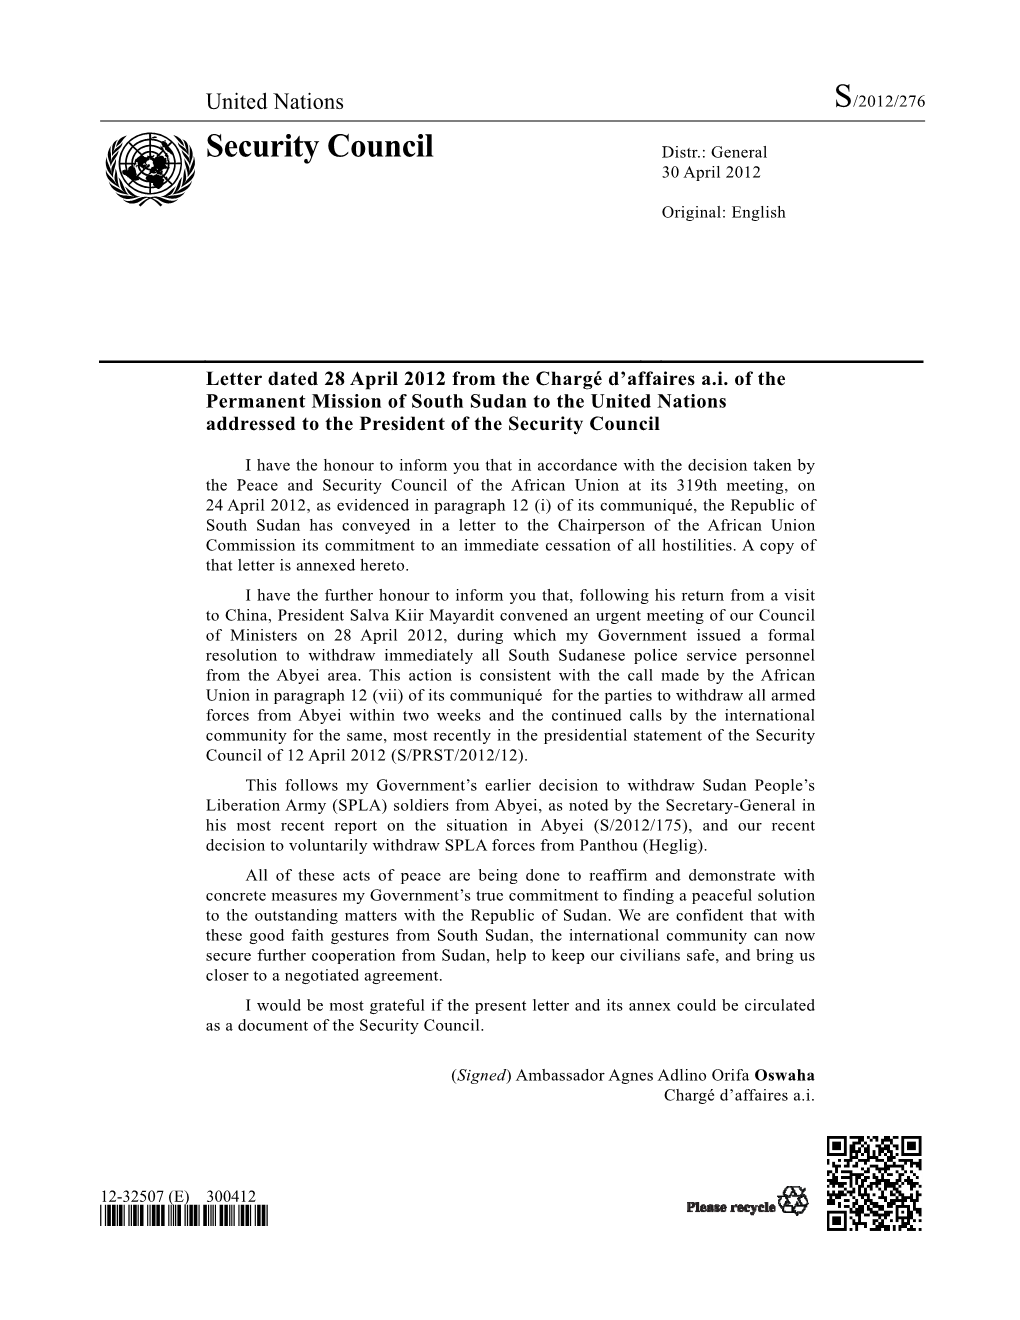 Security Council Distr.: General 30 April 2012